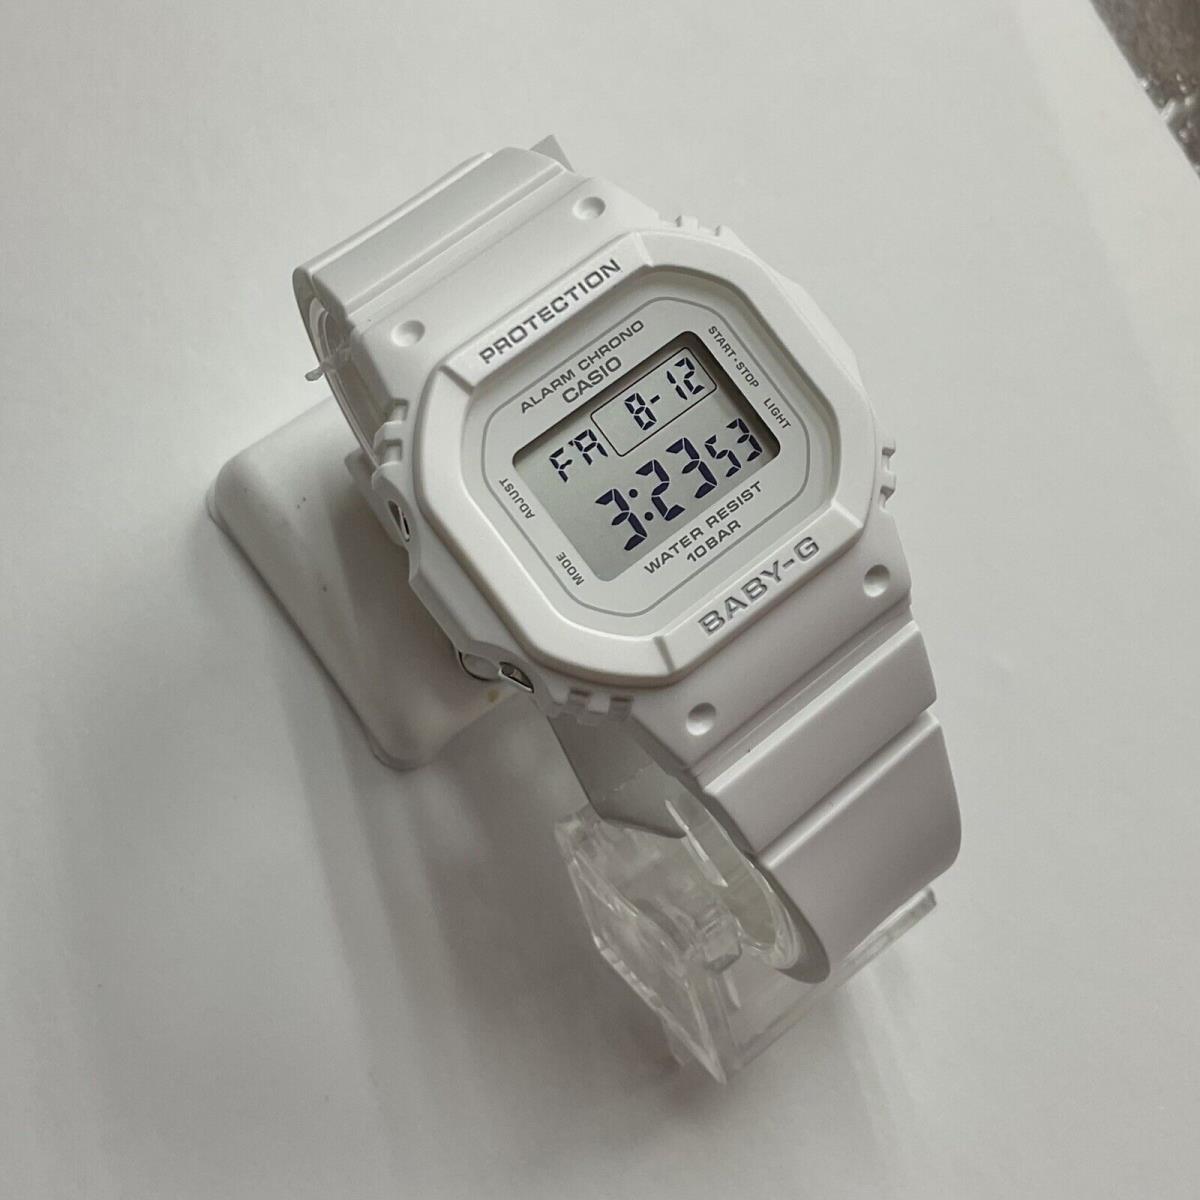 Casio G-shock Baby-g White Digital Running Watch BGD565-7